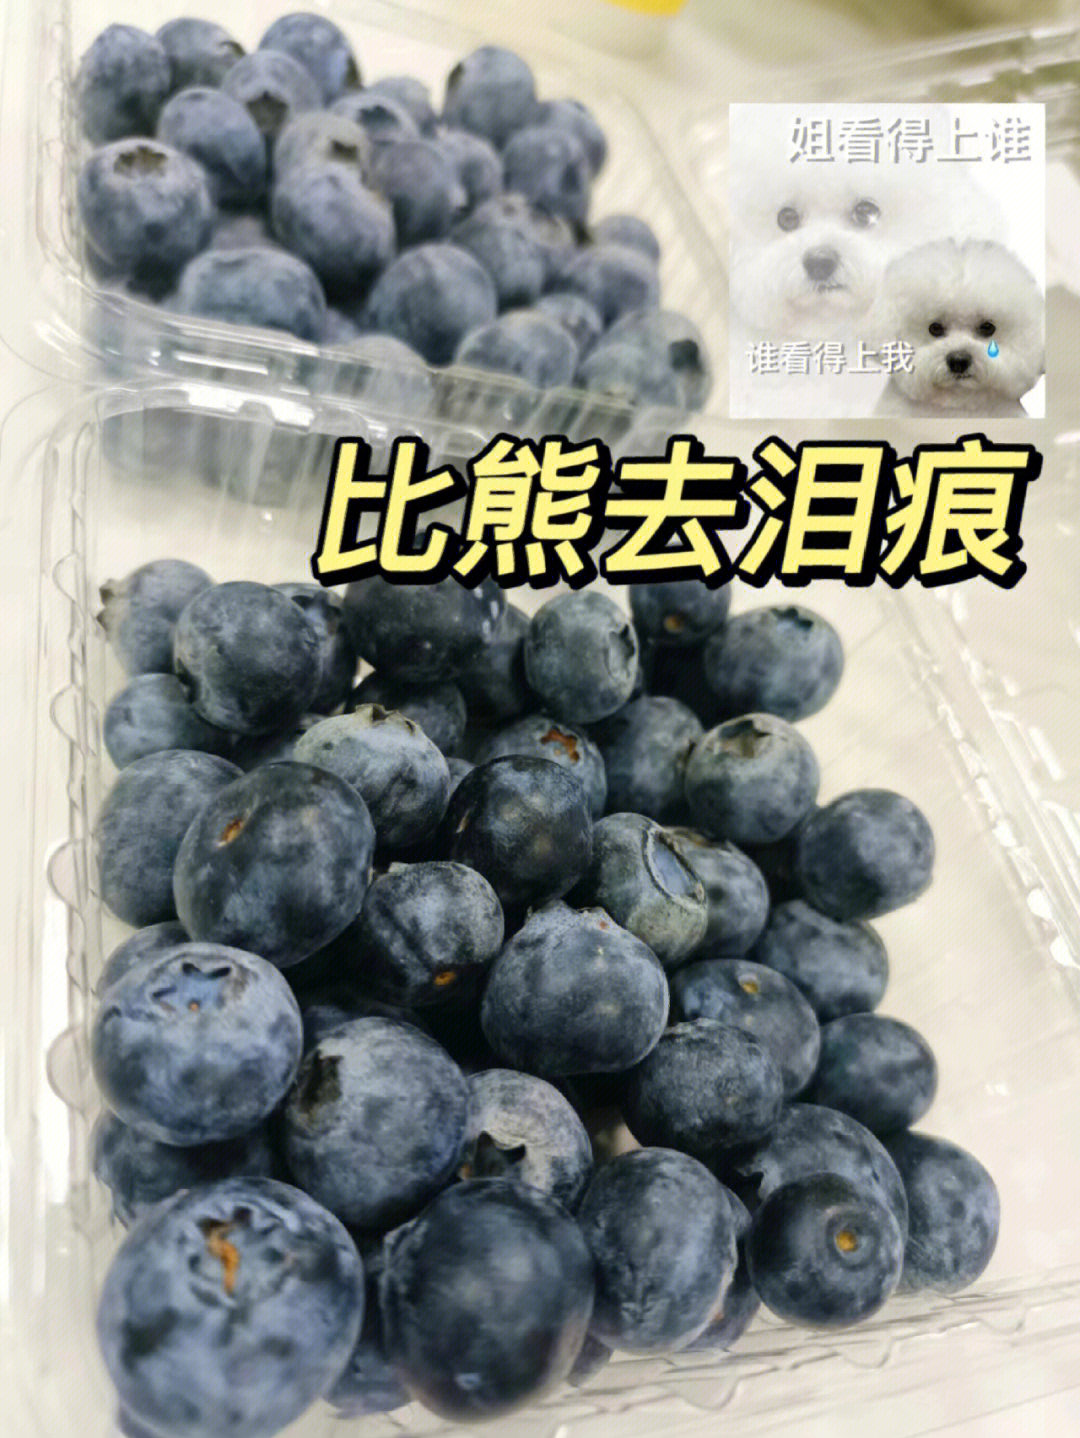 宠物医生都说吃蓝莓对眼睛好,里面富含花青素94可以抗氧化,明目亮眼